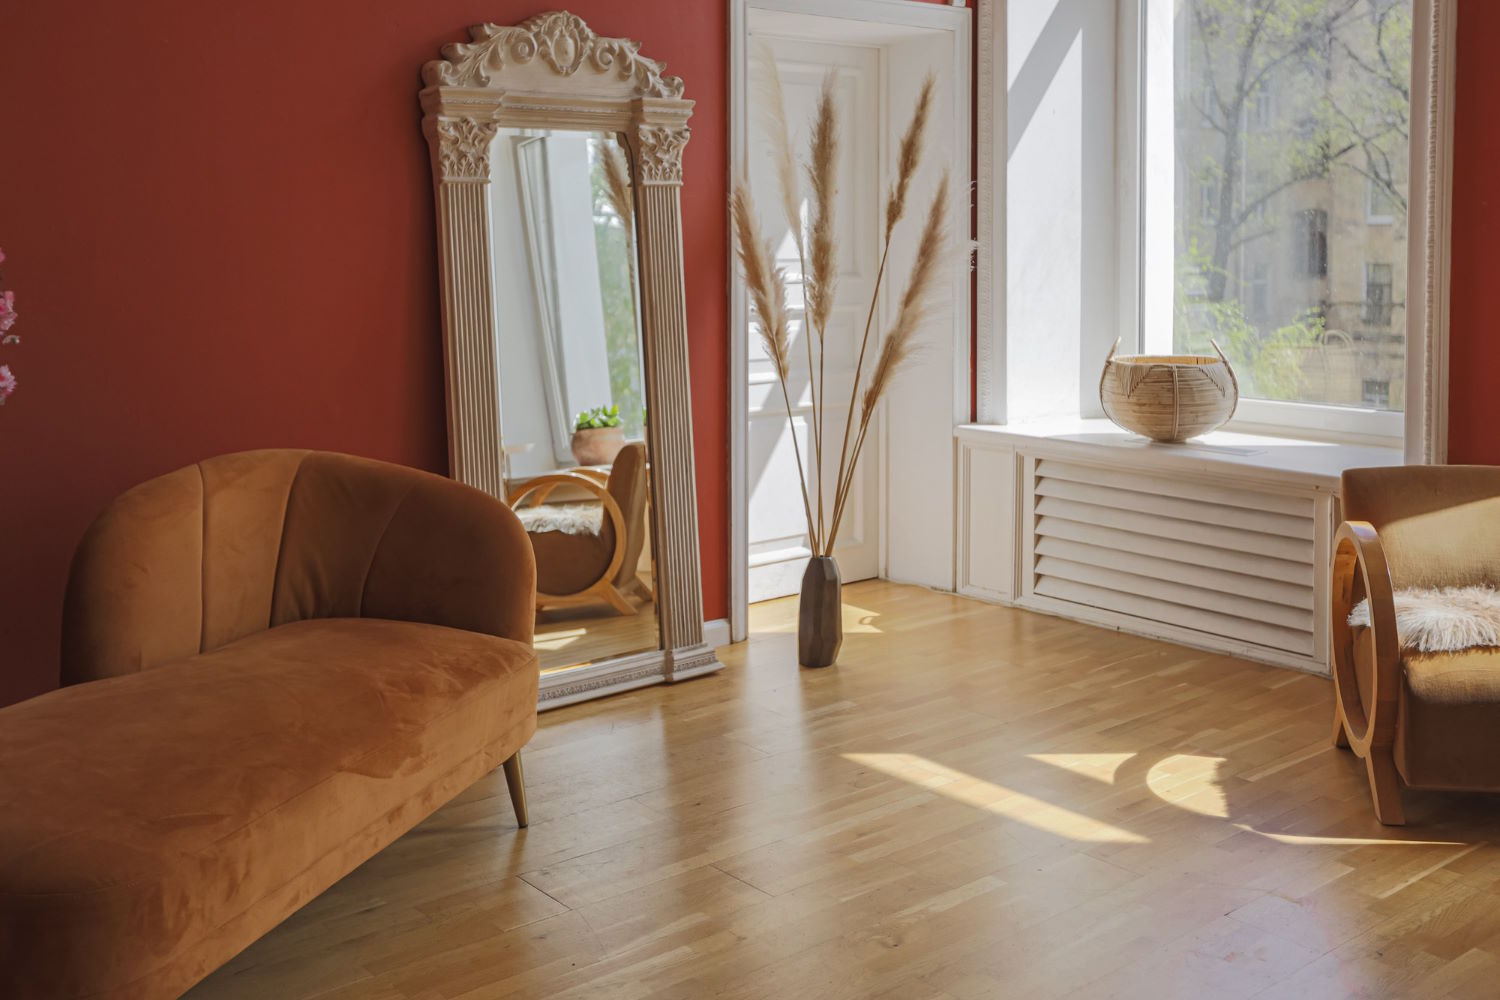 Podłogi warstwowe to innowacyjne rozwiązanie, które cieszy się coraz większą popularnością wśród klientów poszukujących trwałych i estetycznych rozwiązań do swojego domu czy mieszkania